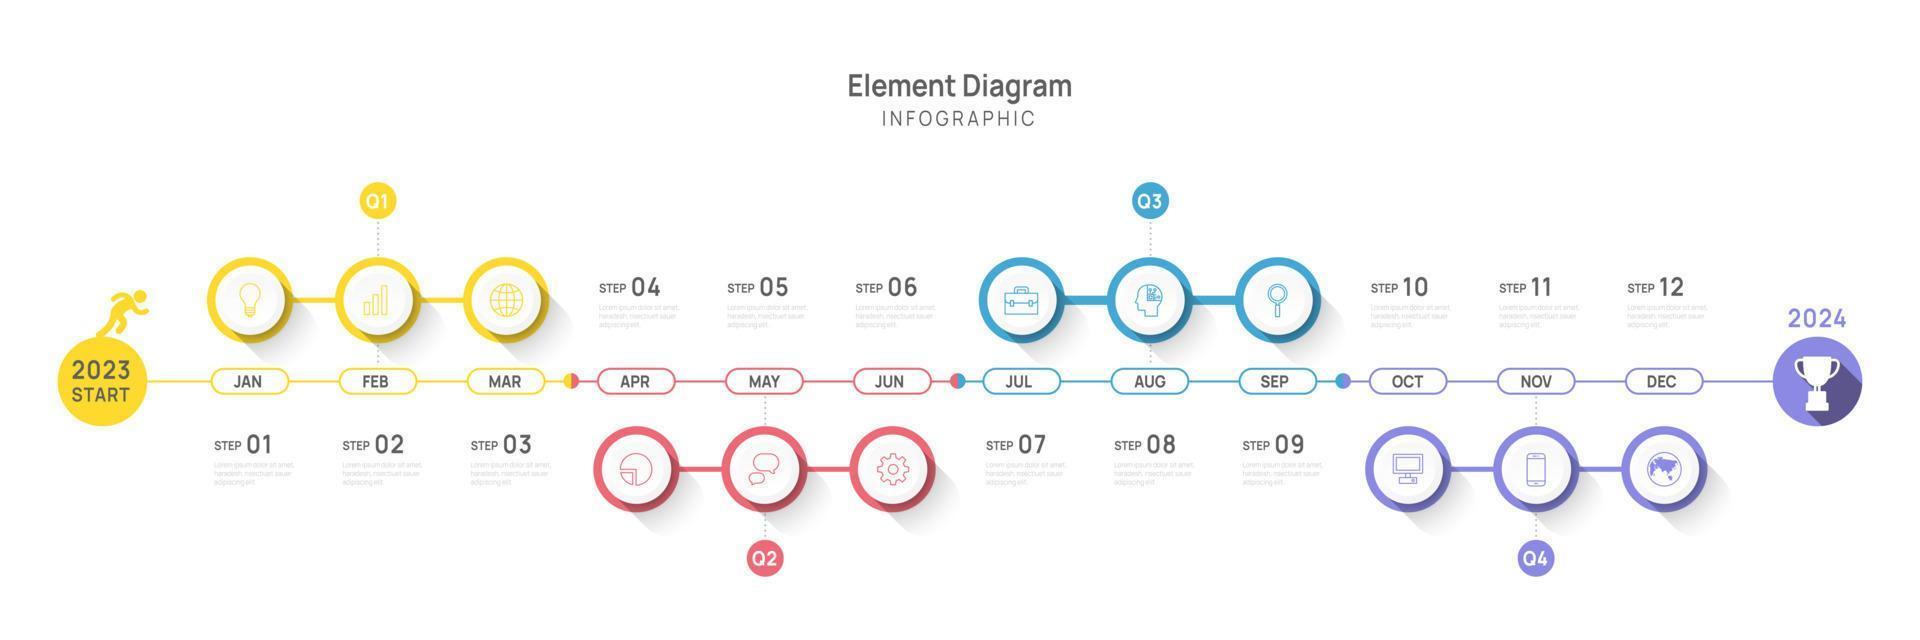 Infografica modello per attività commerciale. 12 mesi moderno sequenza temporale elemento diagramma calendario, 4 trimestre passaggi pietra miliare presentazione vettore infografica.